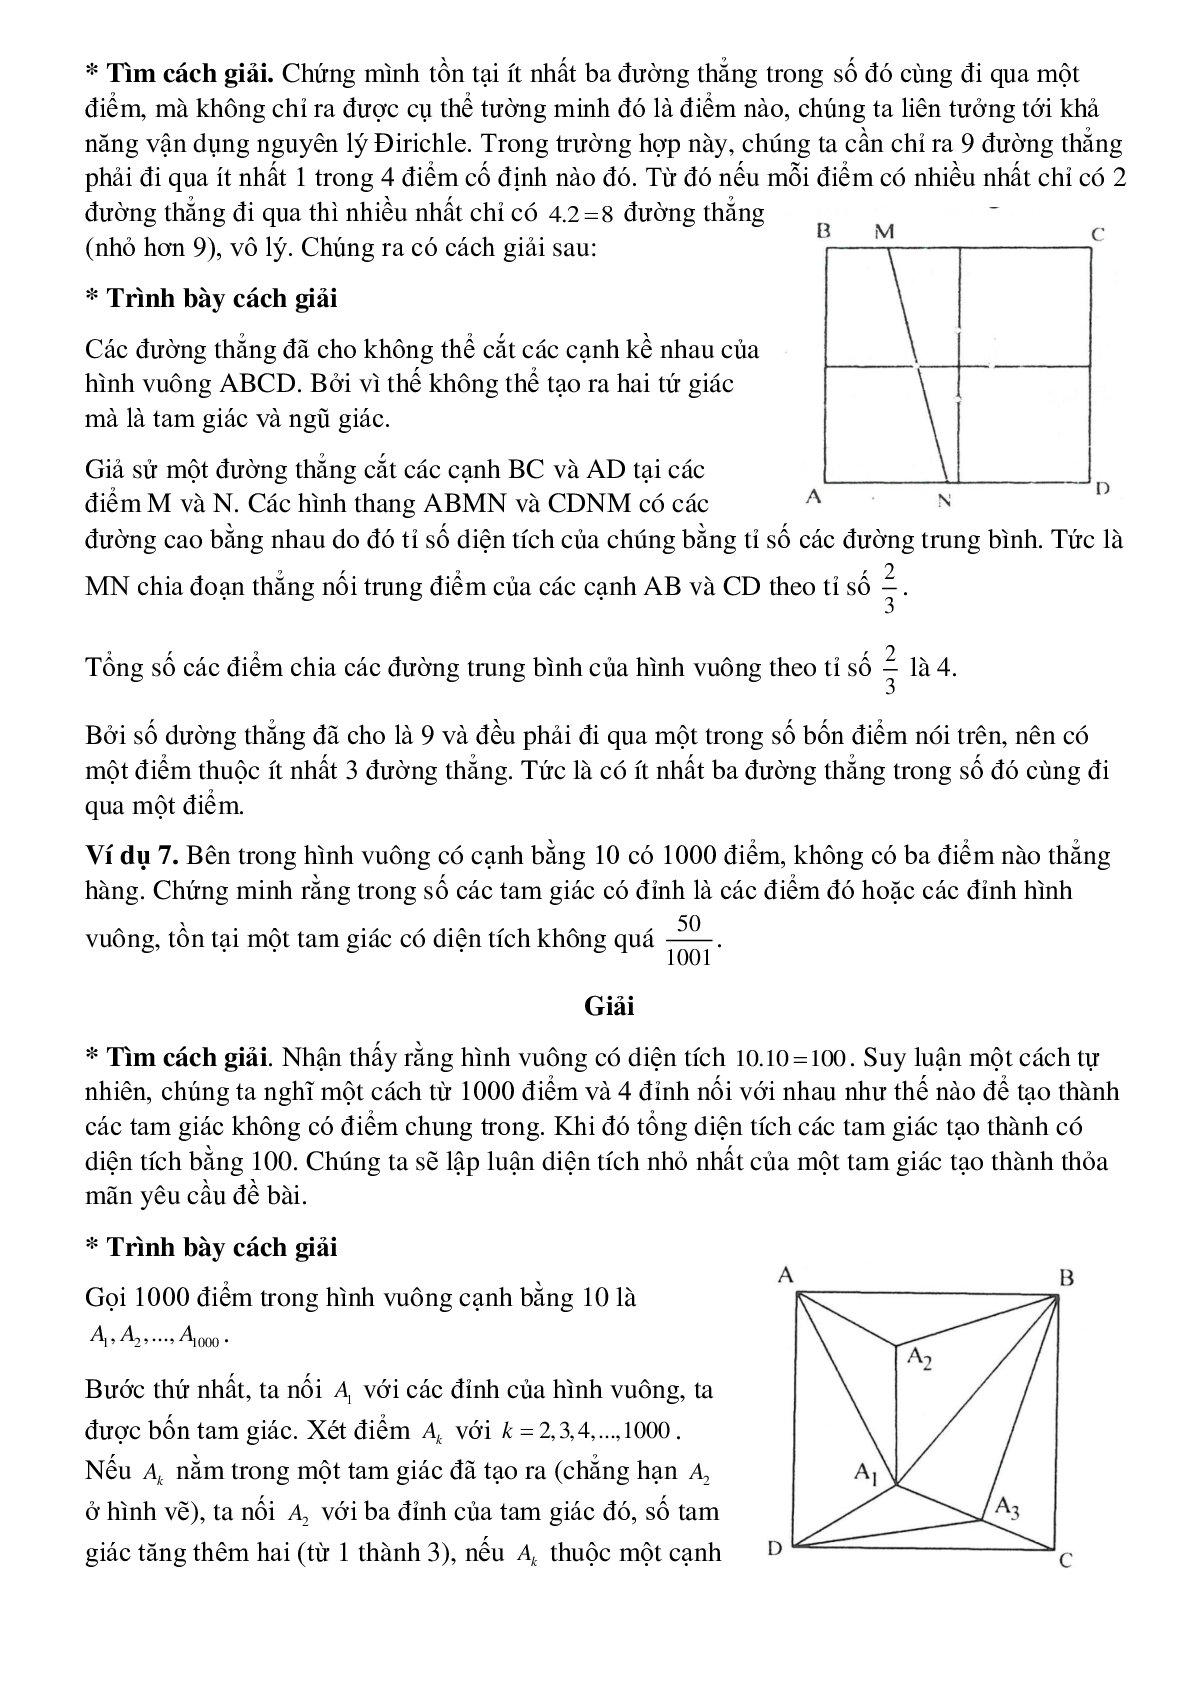 Diện tích đa giác (trang 6)